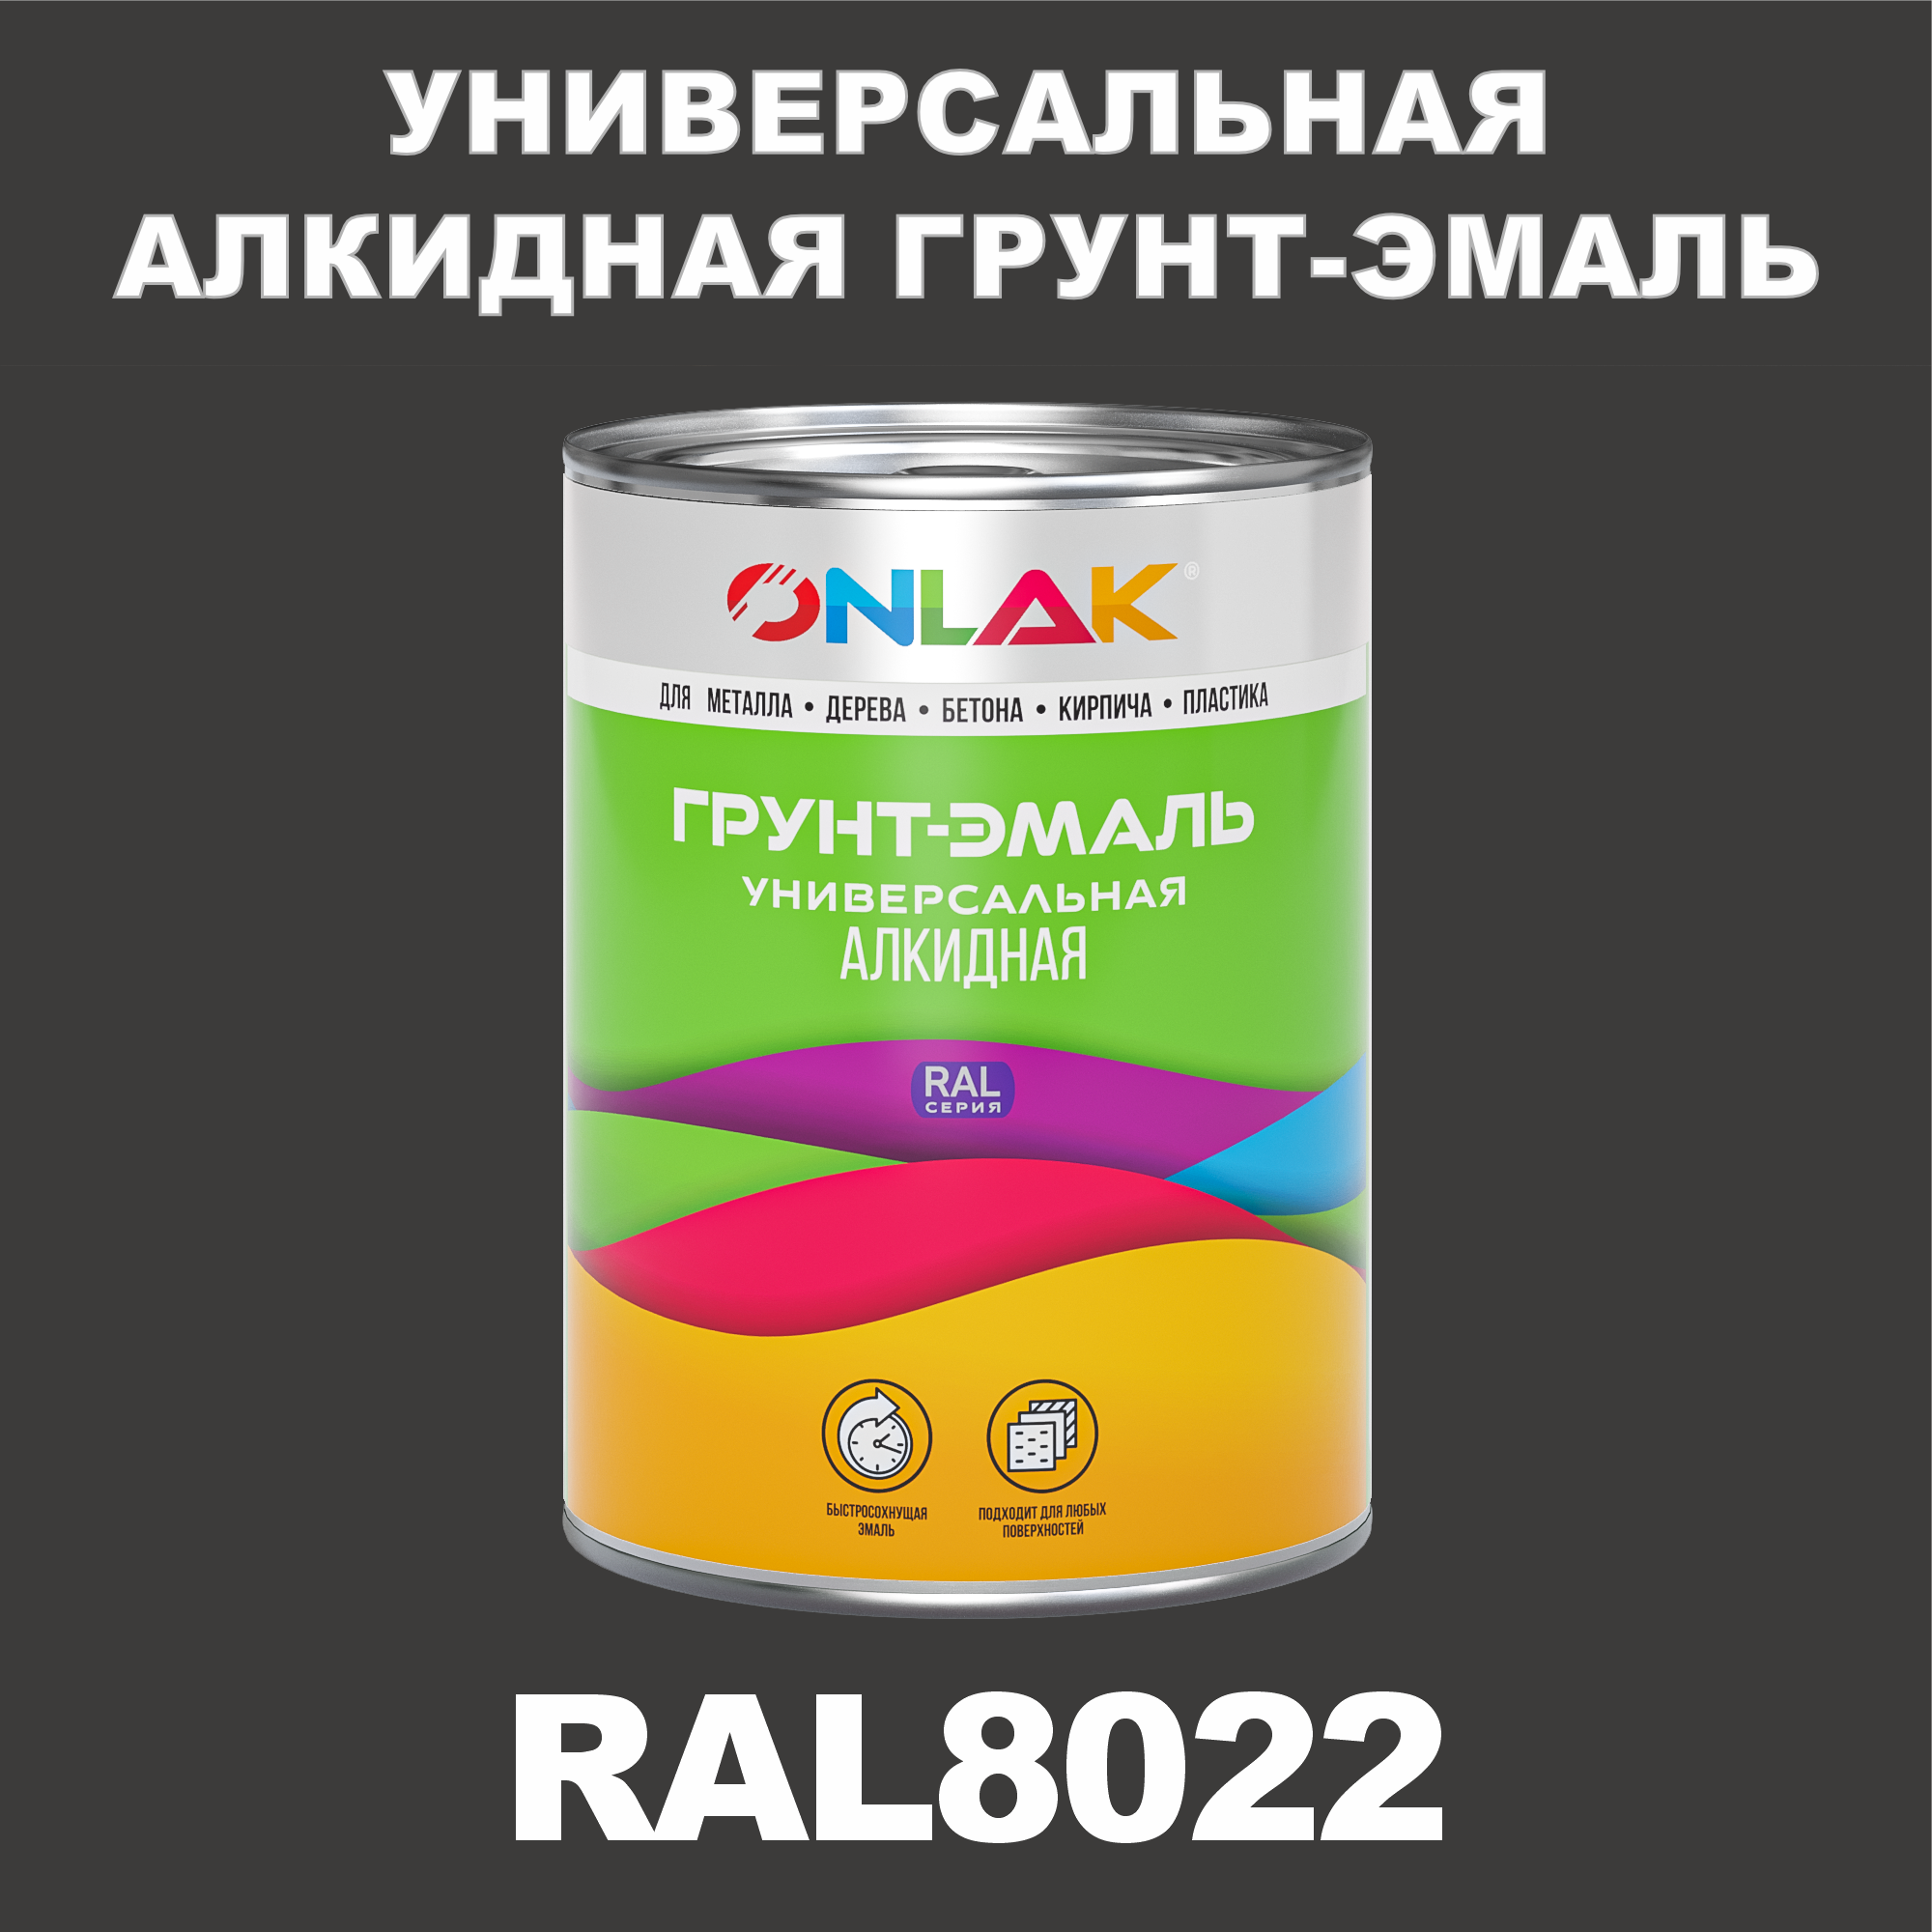 Грунт-эмаль ONLAK 1К RAL8022 антикоррозионная алкидная по металлу по ржавчине 1 кг грунт эмаль yollo по ржавчине алкидная серая 0 9 кг